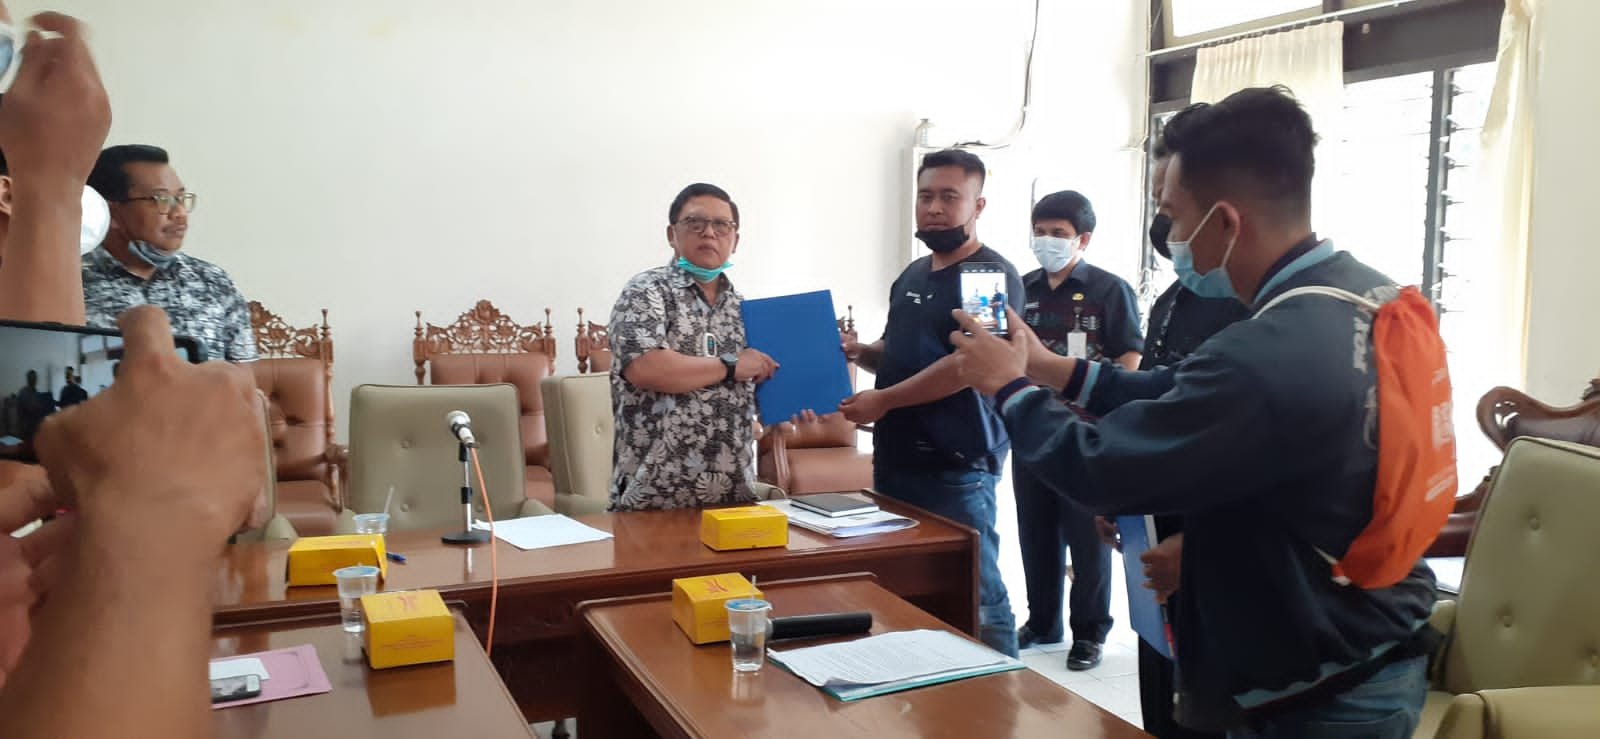 AUDIENSI. DPRD Kabupaten Magelang menerima audiensi perwakilan pengrajin tahu dan tempe Desa Mejing Candimulyo, Jumat (25/3/2022).